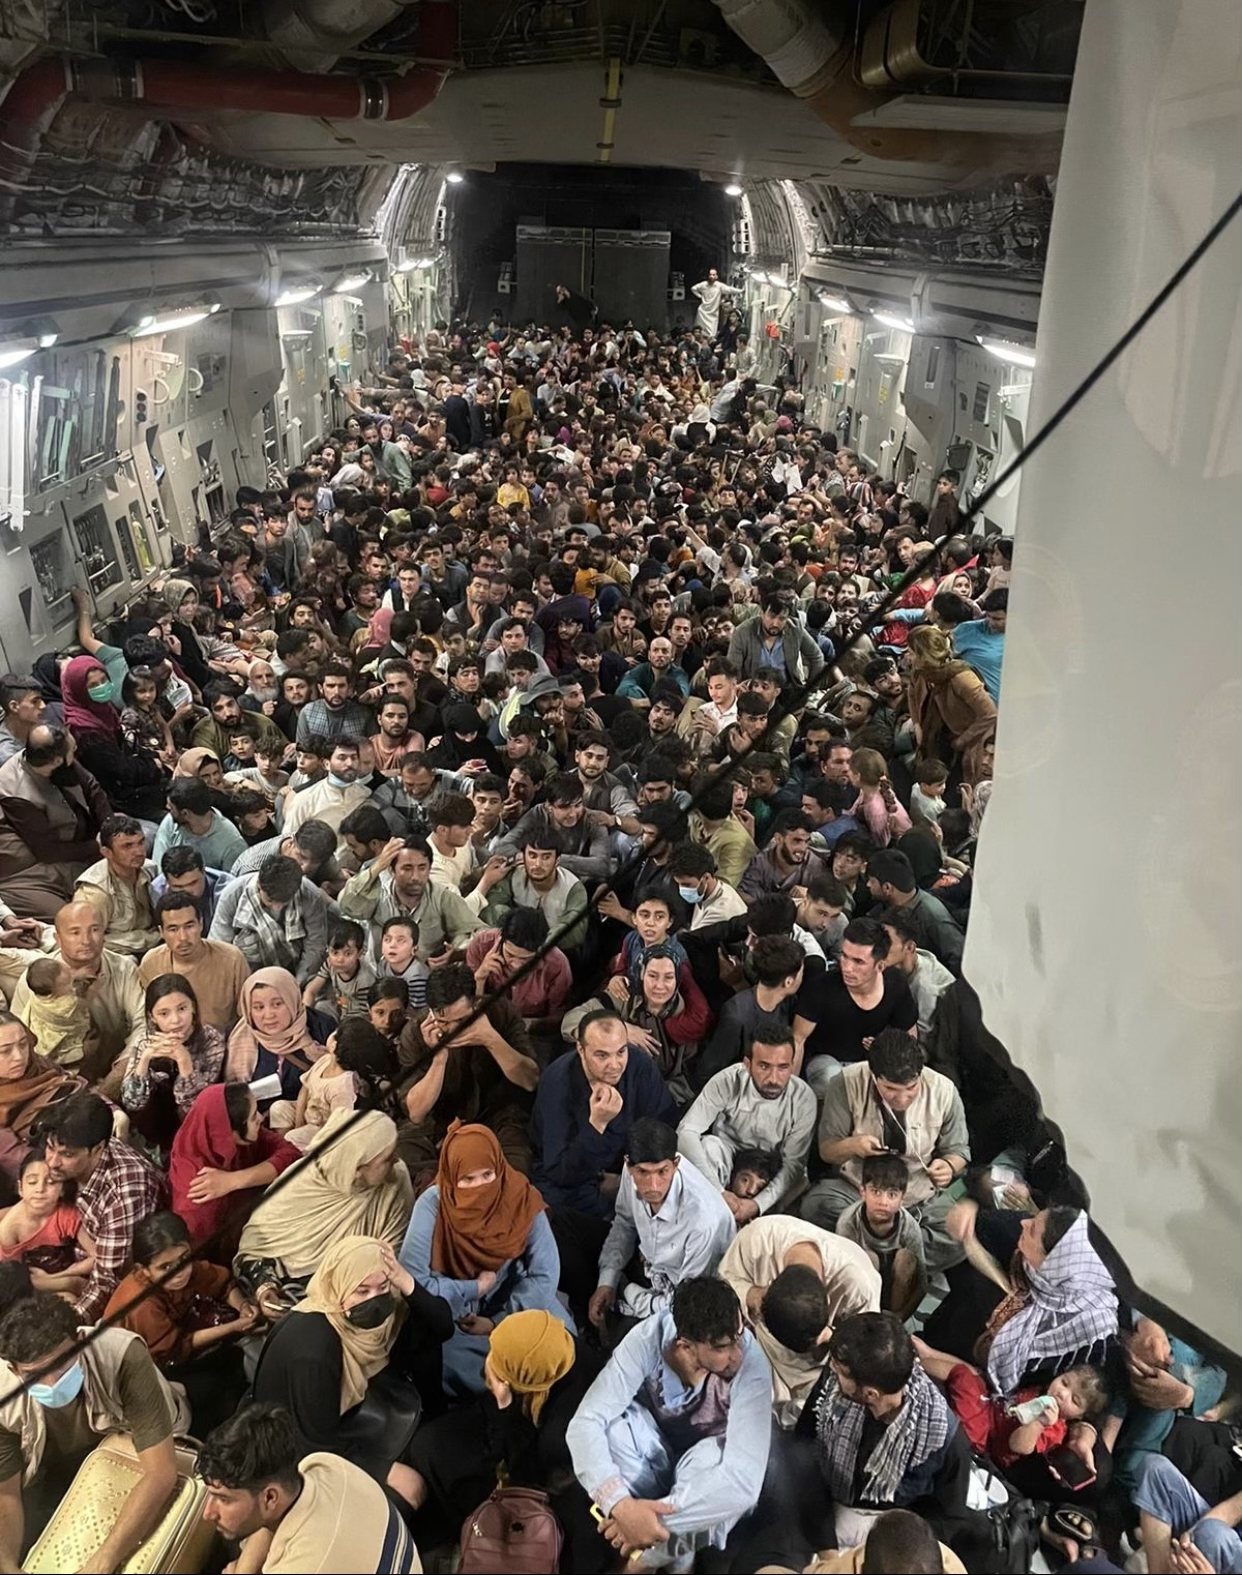 *Reach 871*, un C-17 estadounidense repleto de afganos - Viajar a Afganistán - Foro Oriente Próximo y Asia Central